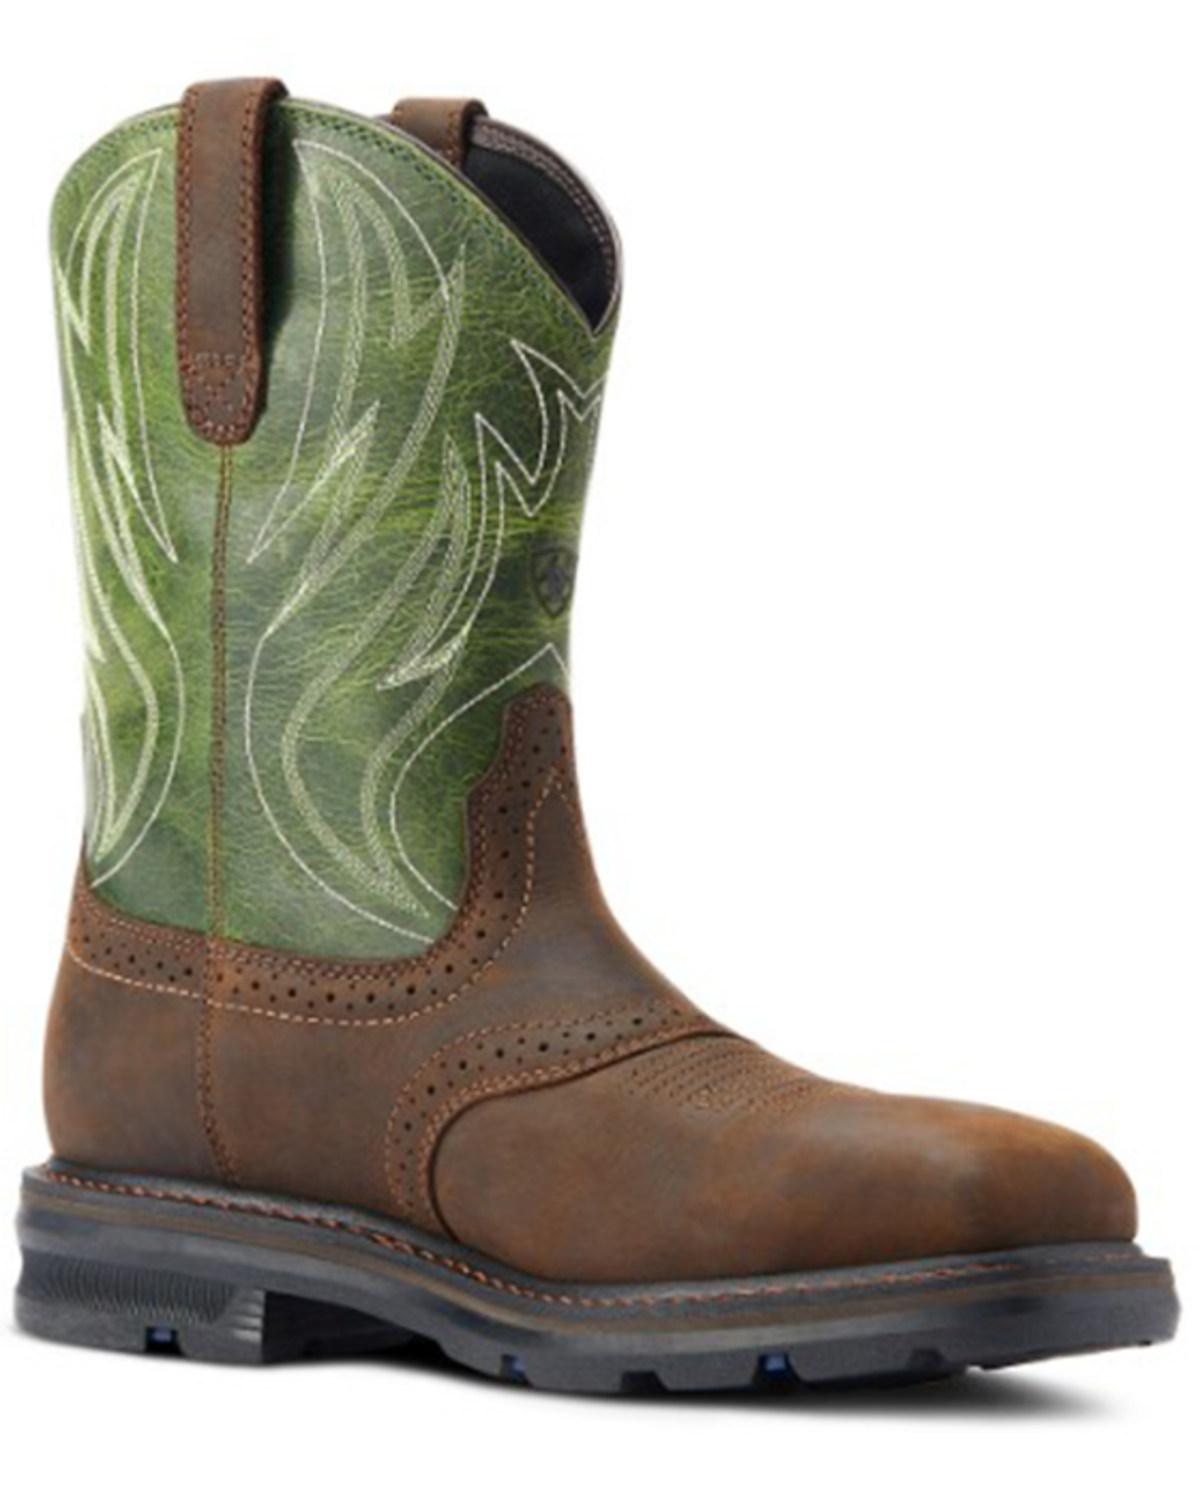 Ariat Men's Sierra Shock Shield Western Boots - Steel Toe